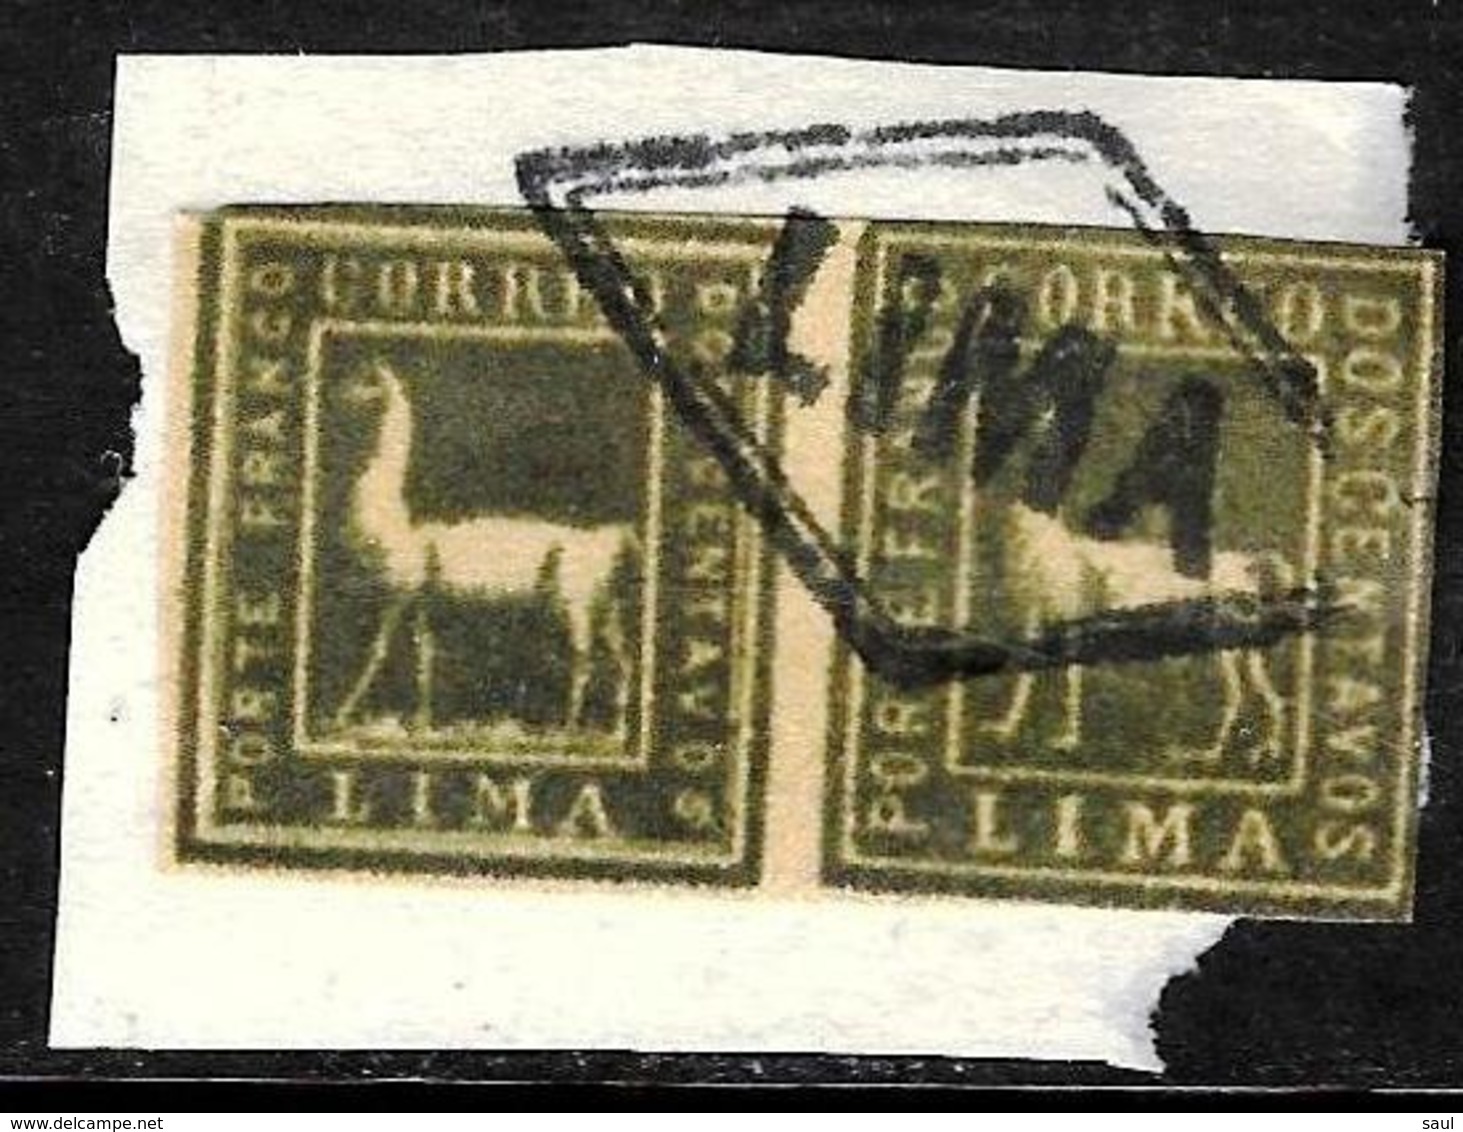 532 - PERU - 1873 - PAIR - CUDE FORGERIES - LIMA CANCEL - FALSES, FALSCHEN, FAKES, FALSOS - Collections (sans Albums)